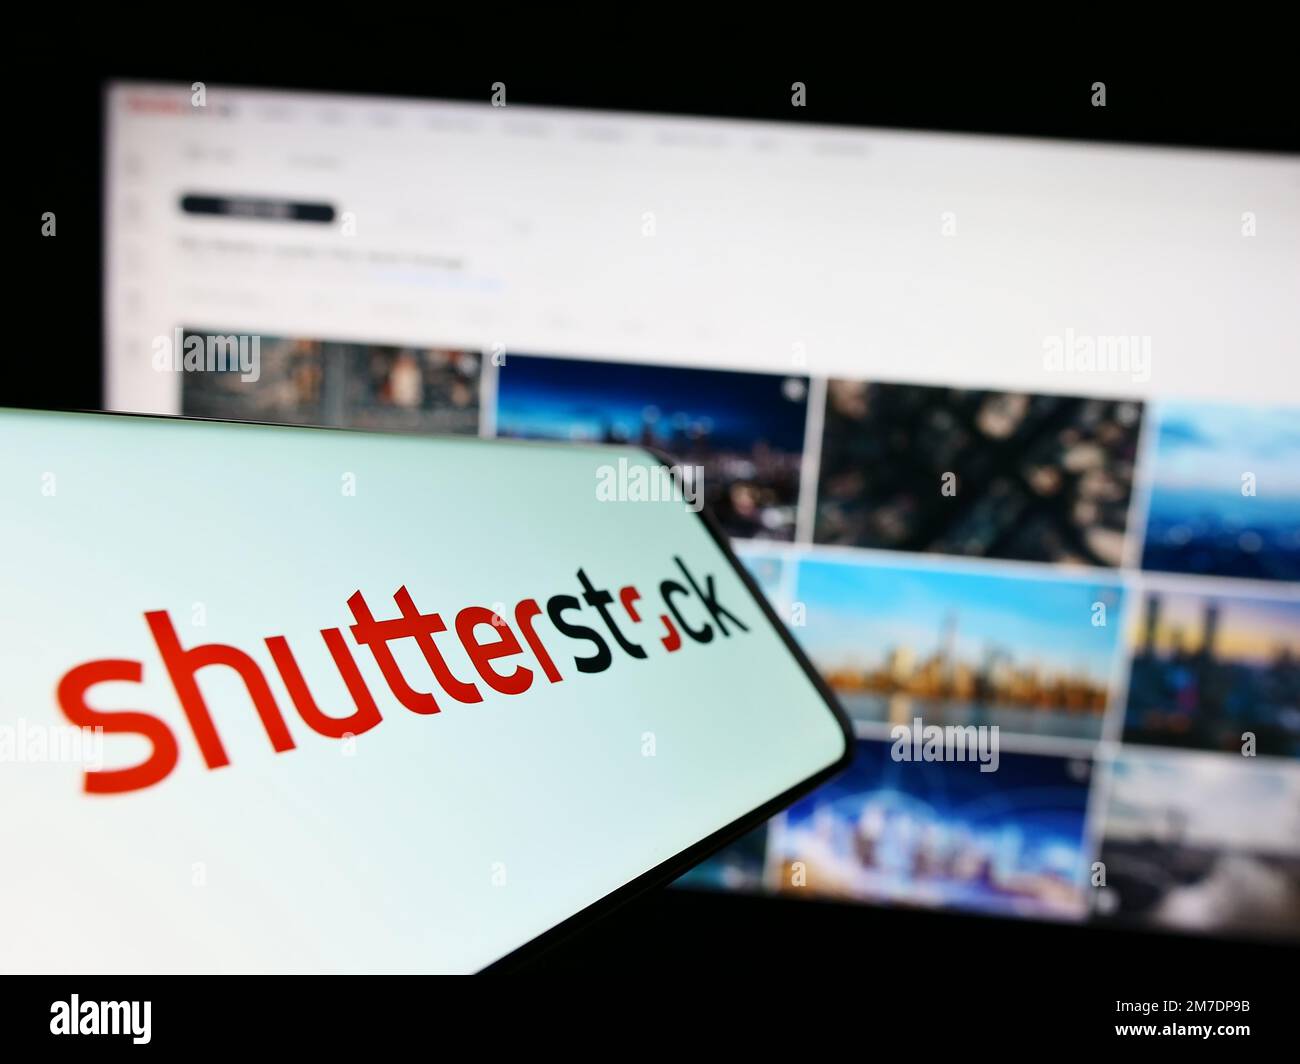 Teléfono móvil con el logotipo de la compañía estadounidense de fotografía de stock Shutterstock Inc. En la pantalla delante del sitio web. Enfoque en el centro derecho de la pantalla del teléfono. Foto de stock